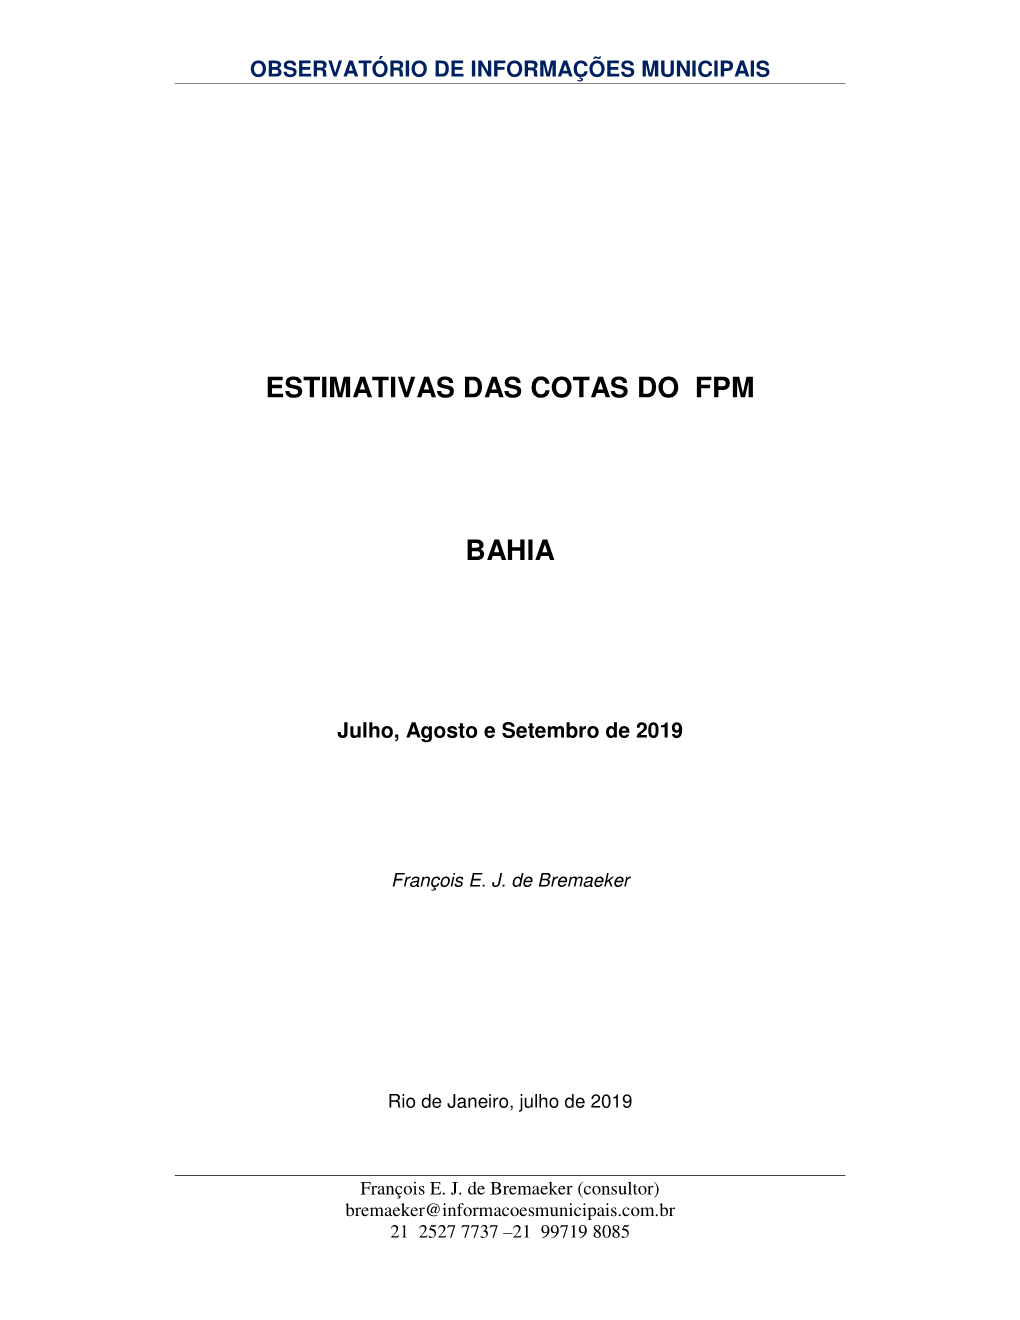 ESTIMATIVAS DAS COTAS DO FPM BAHIA -.. Observatório De